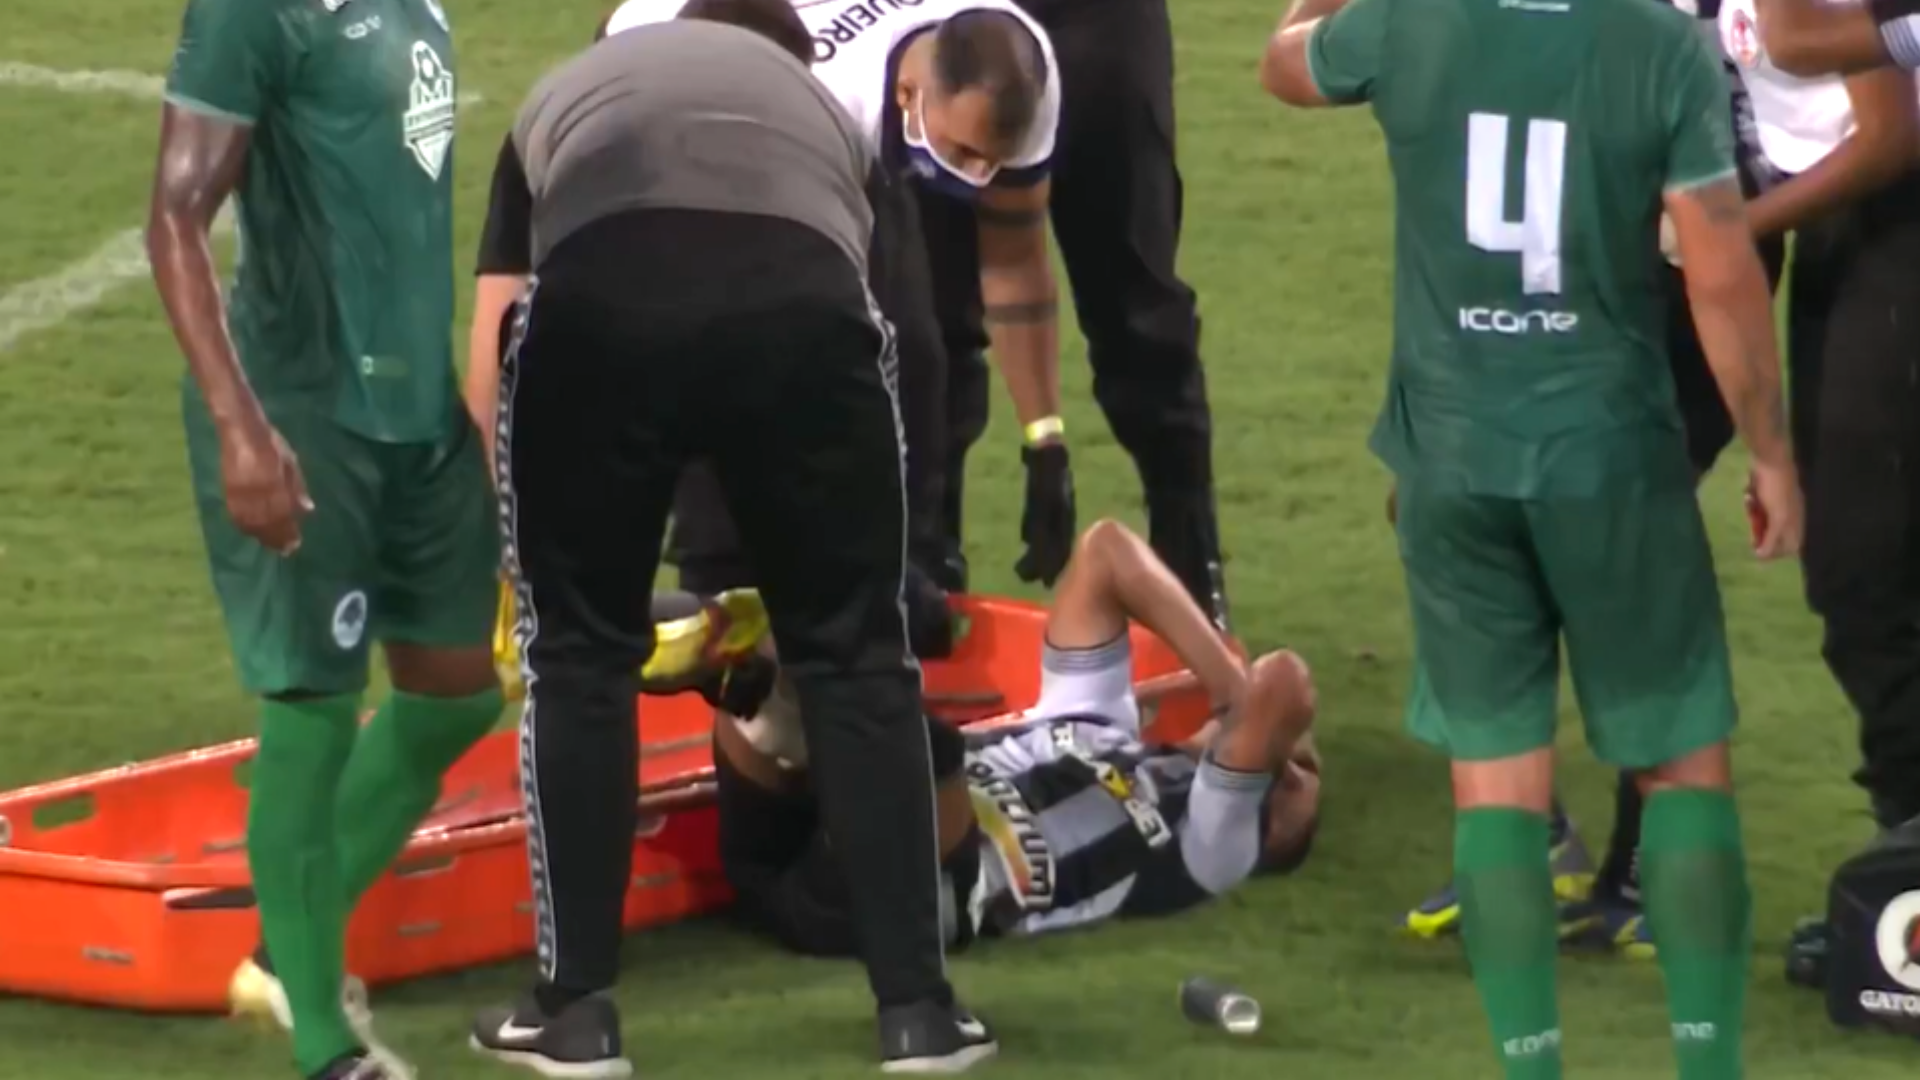 Rafael sai lesionado do jogo do Botafogo